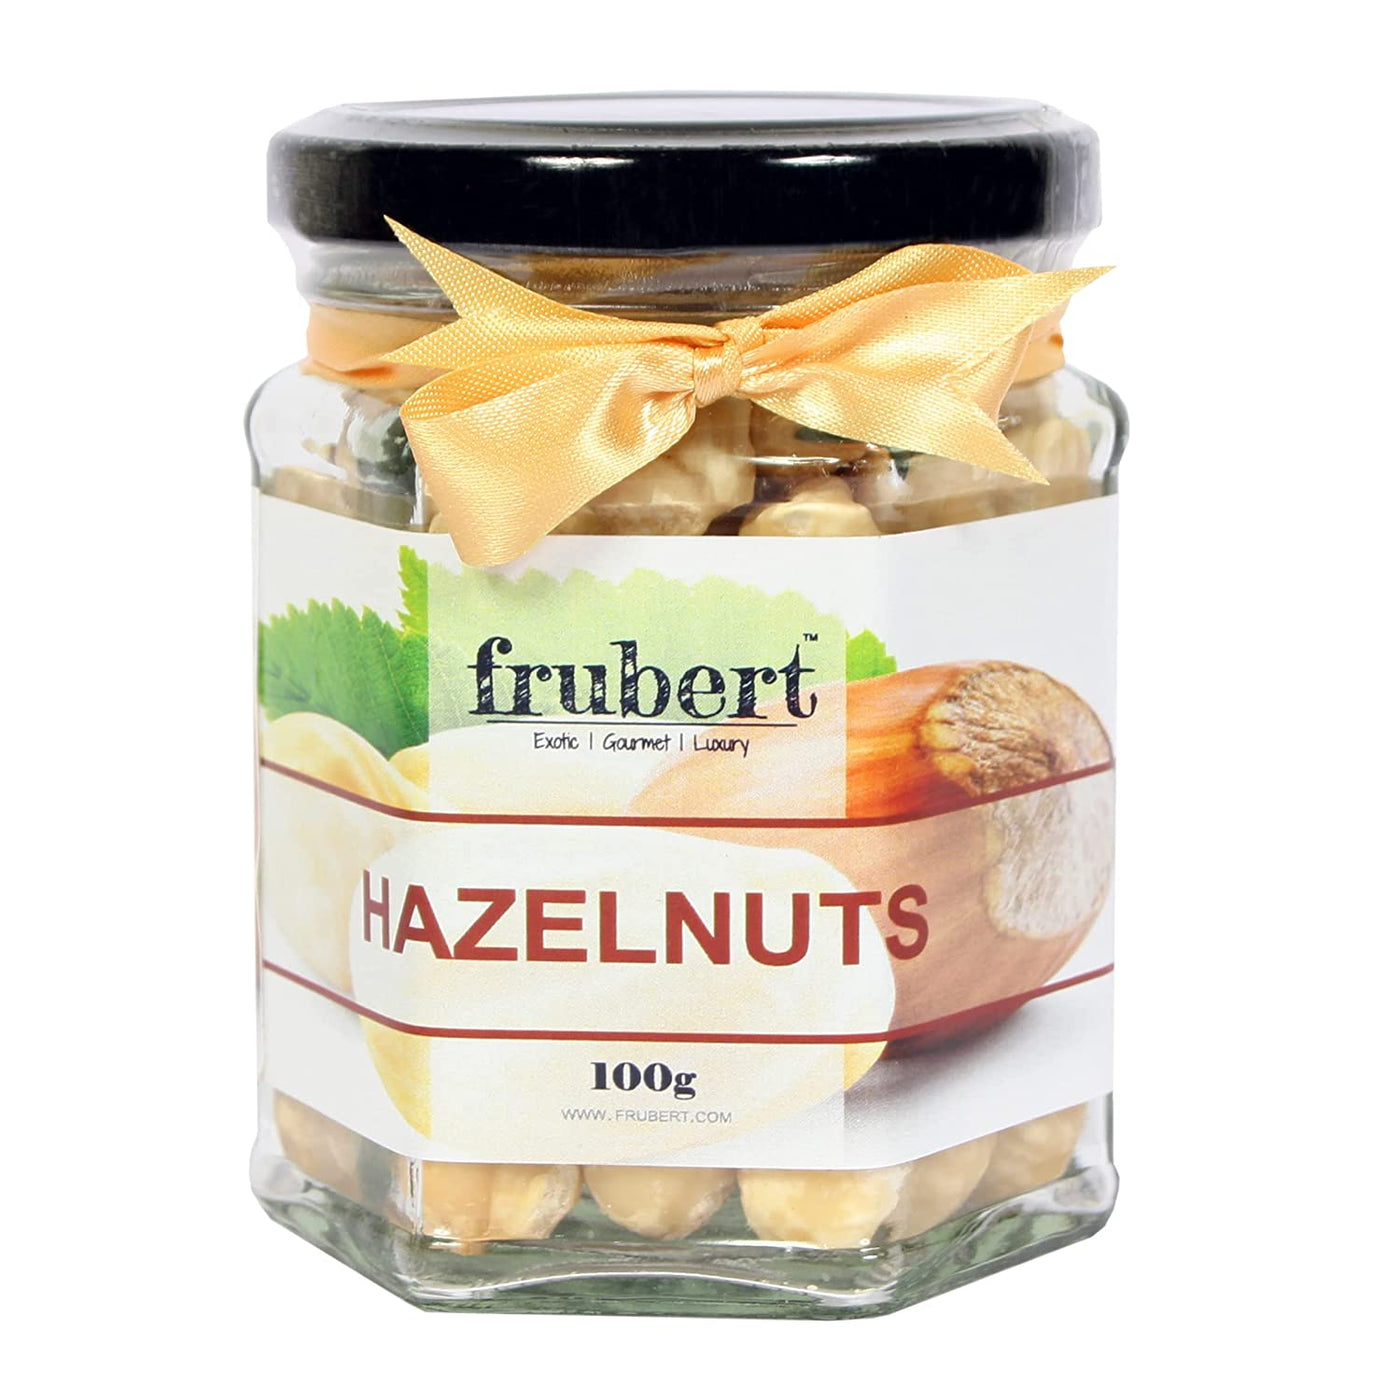 Hazelnuts - Suspire